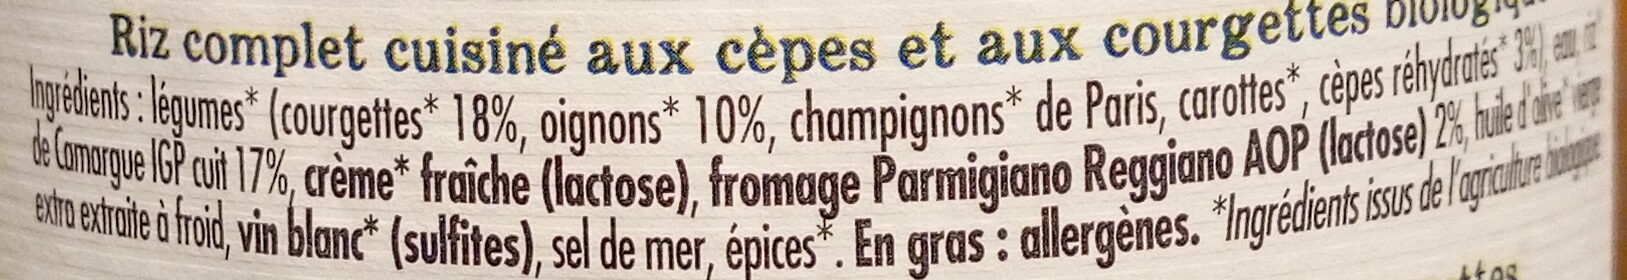 Risotto aux cèpes - riz de Camargue IGP, courgettes et petits oignons - Ingredients - fr